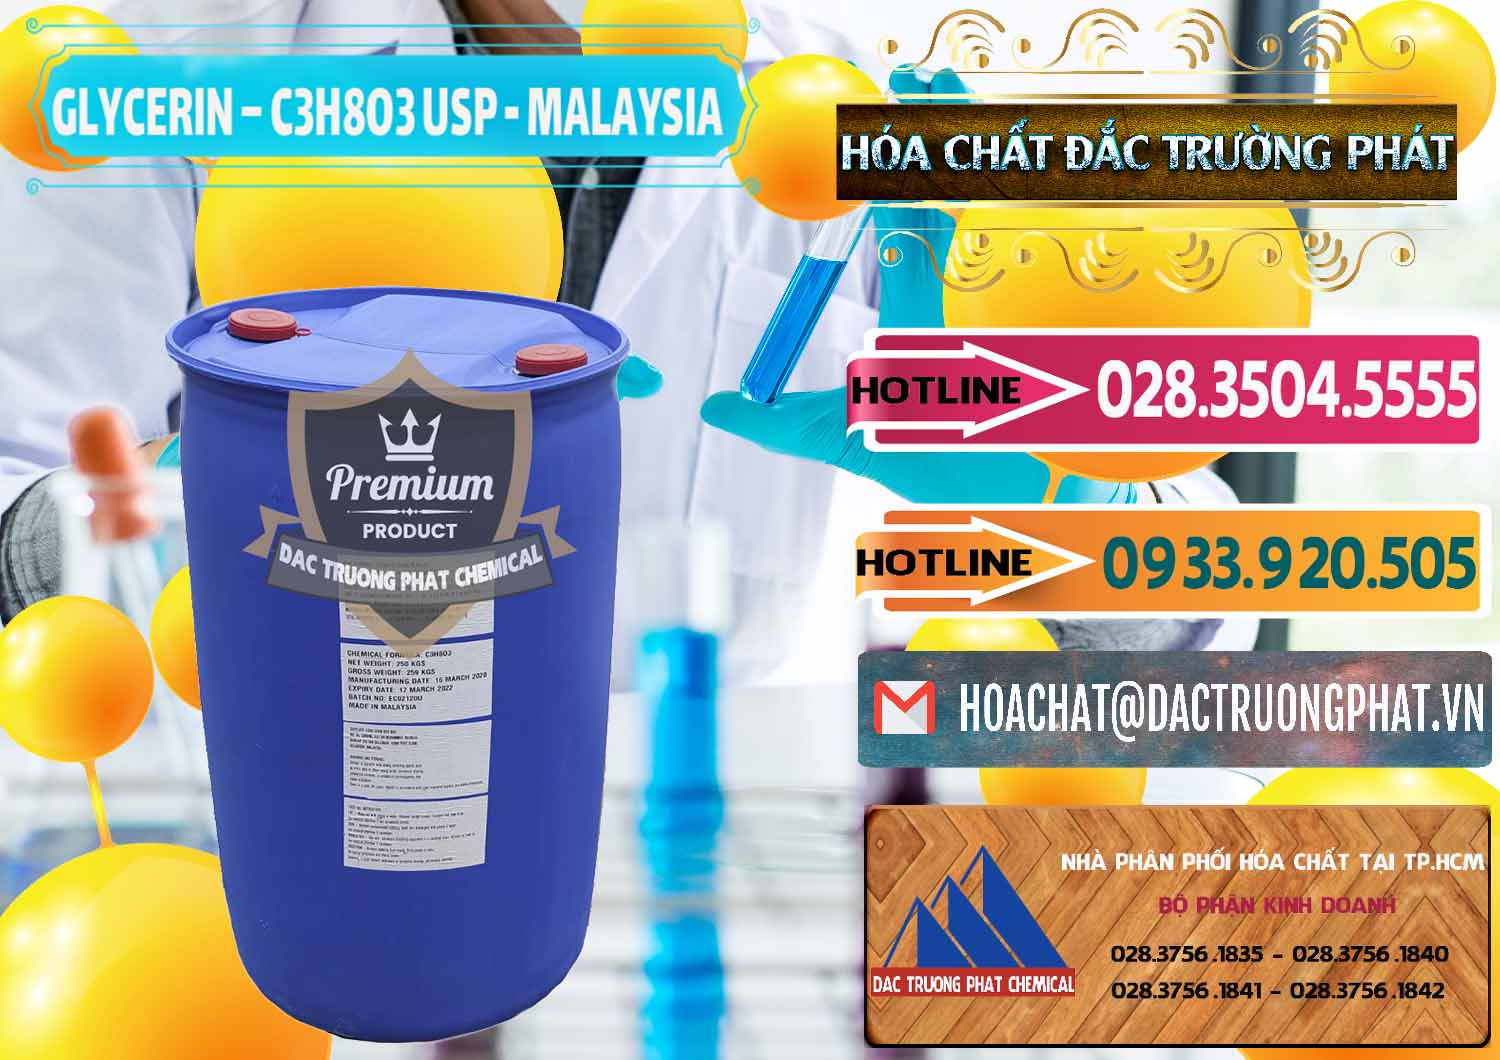 Chuyên bán _ cung ứng Glycerin – C3H8O3 USP Malaysia - 0233 - Nơi nhập khẩu và phân phối hóa chất tại TP.HCM - dactruongphat.vn